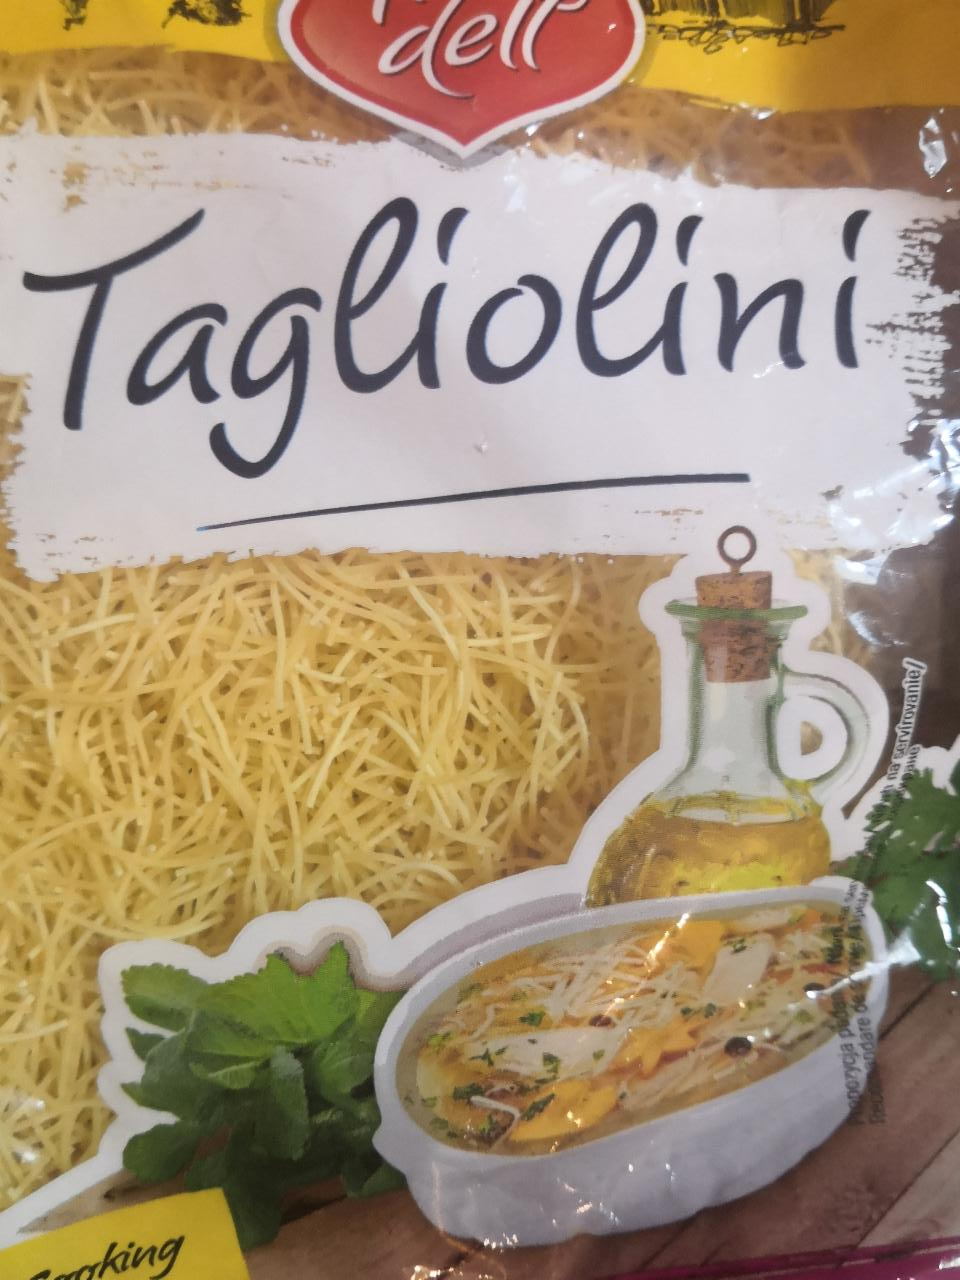 Fotografie - Tagliolini polévkové vlasové nudle (pšeničné vaječné těstoviny) Tiradell